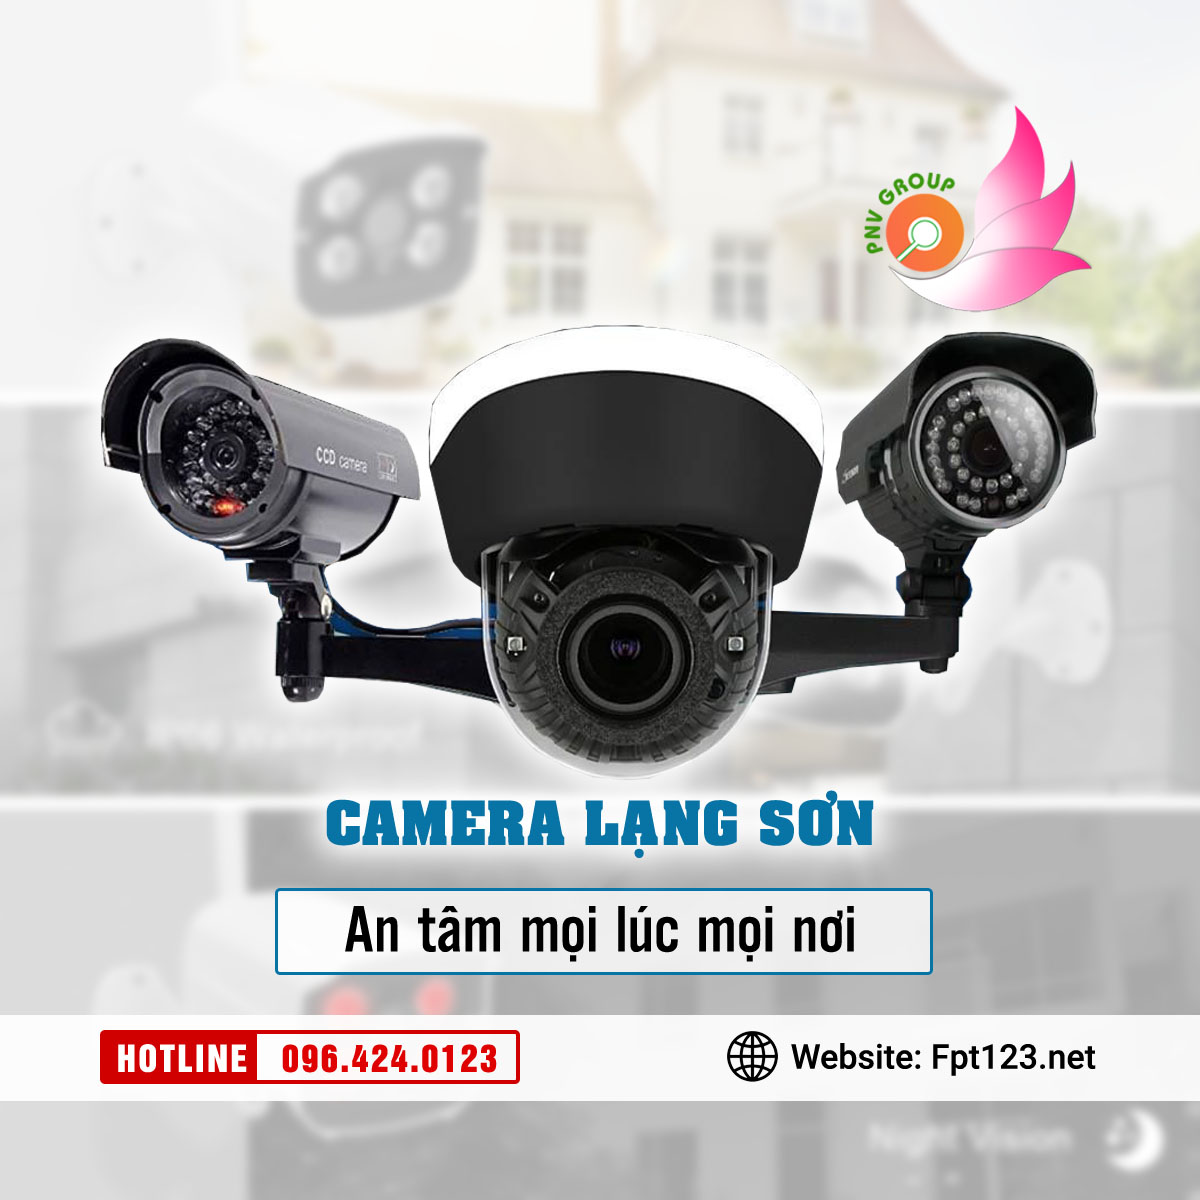 Lắp đặt camera quan sát tại Lộc Bình, Lạng Sơn